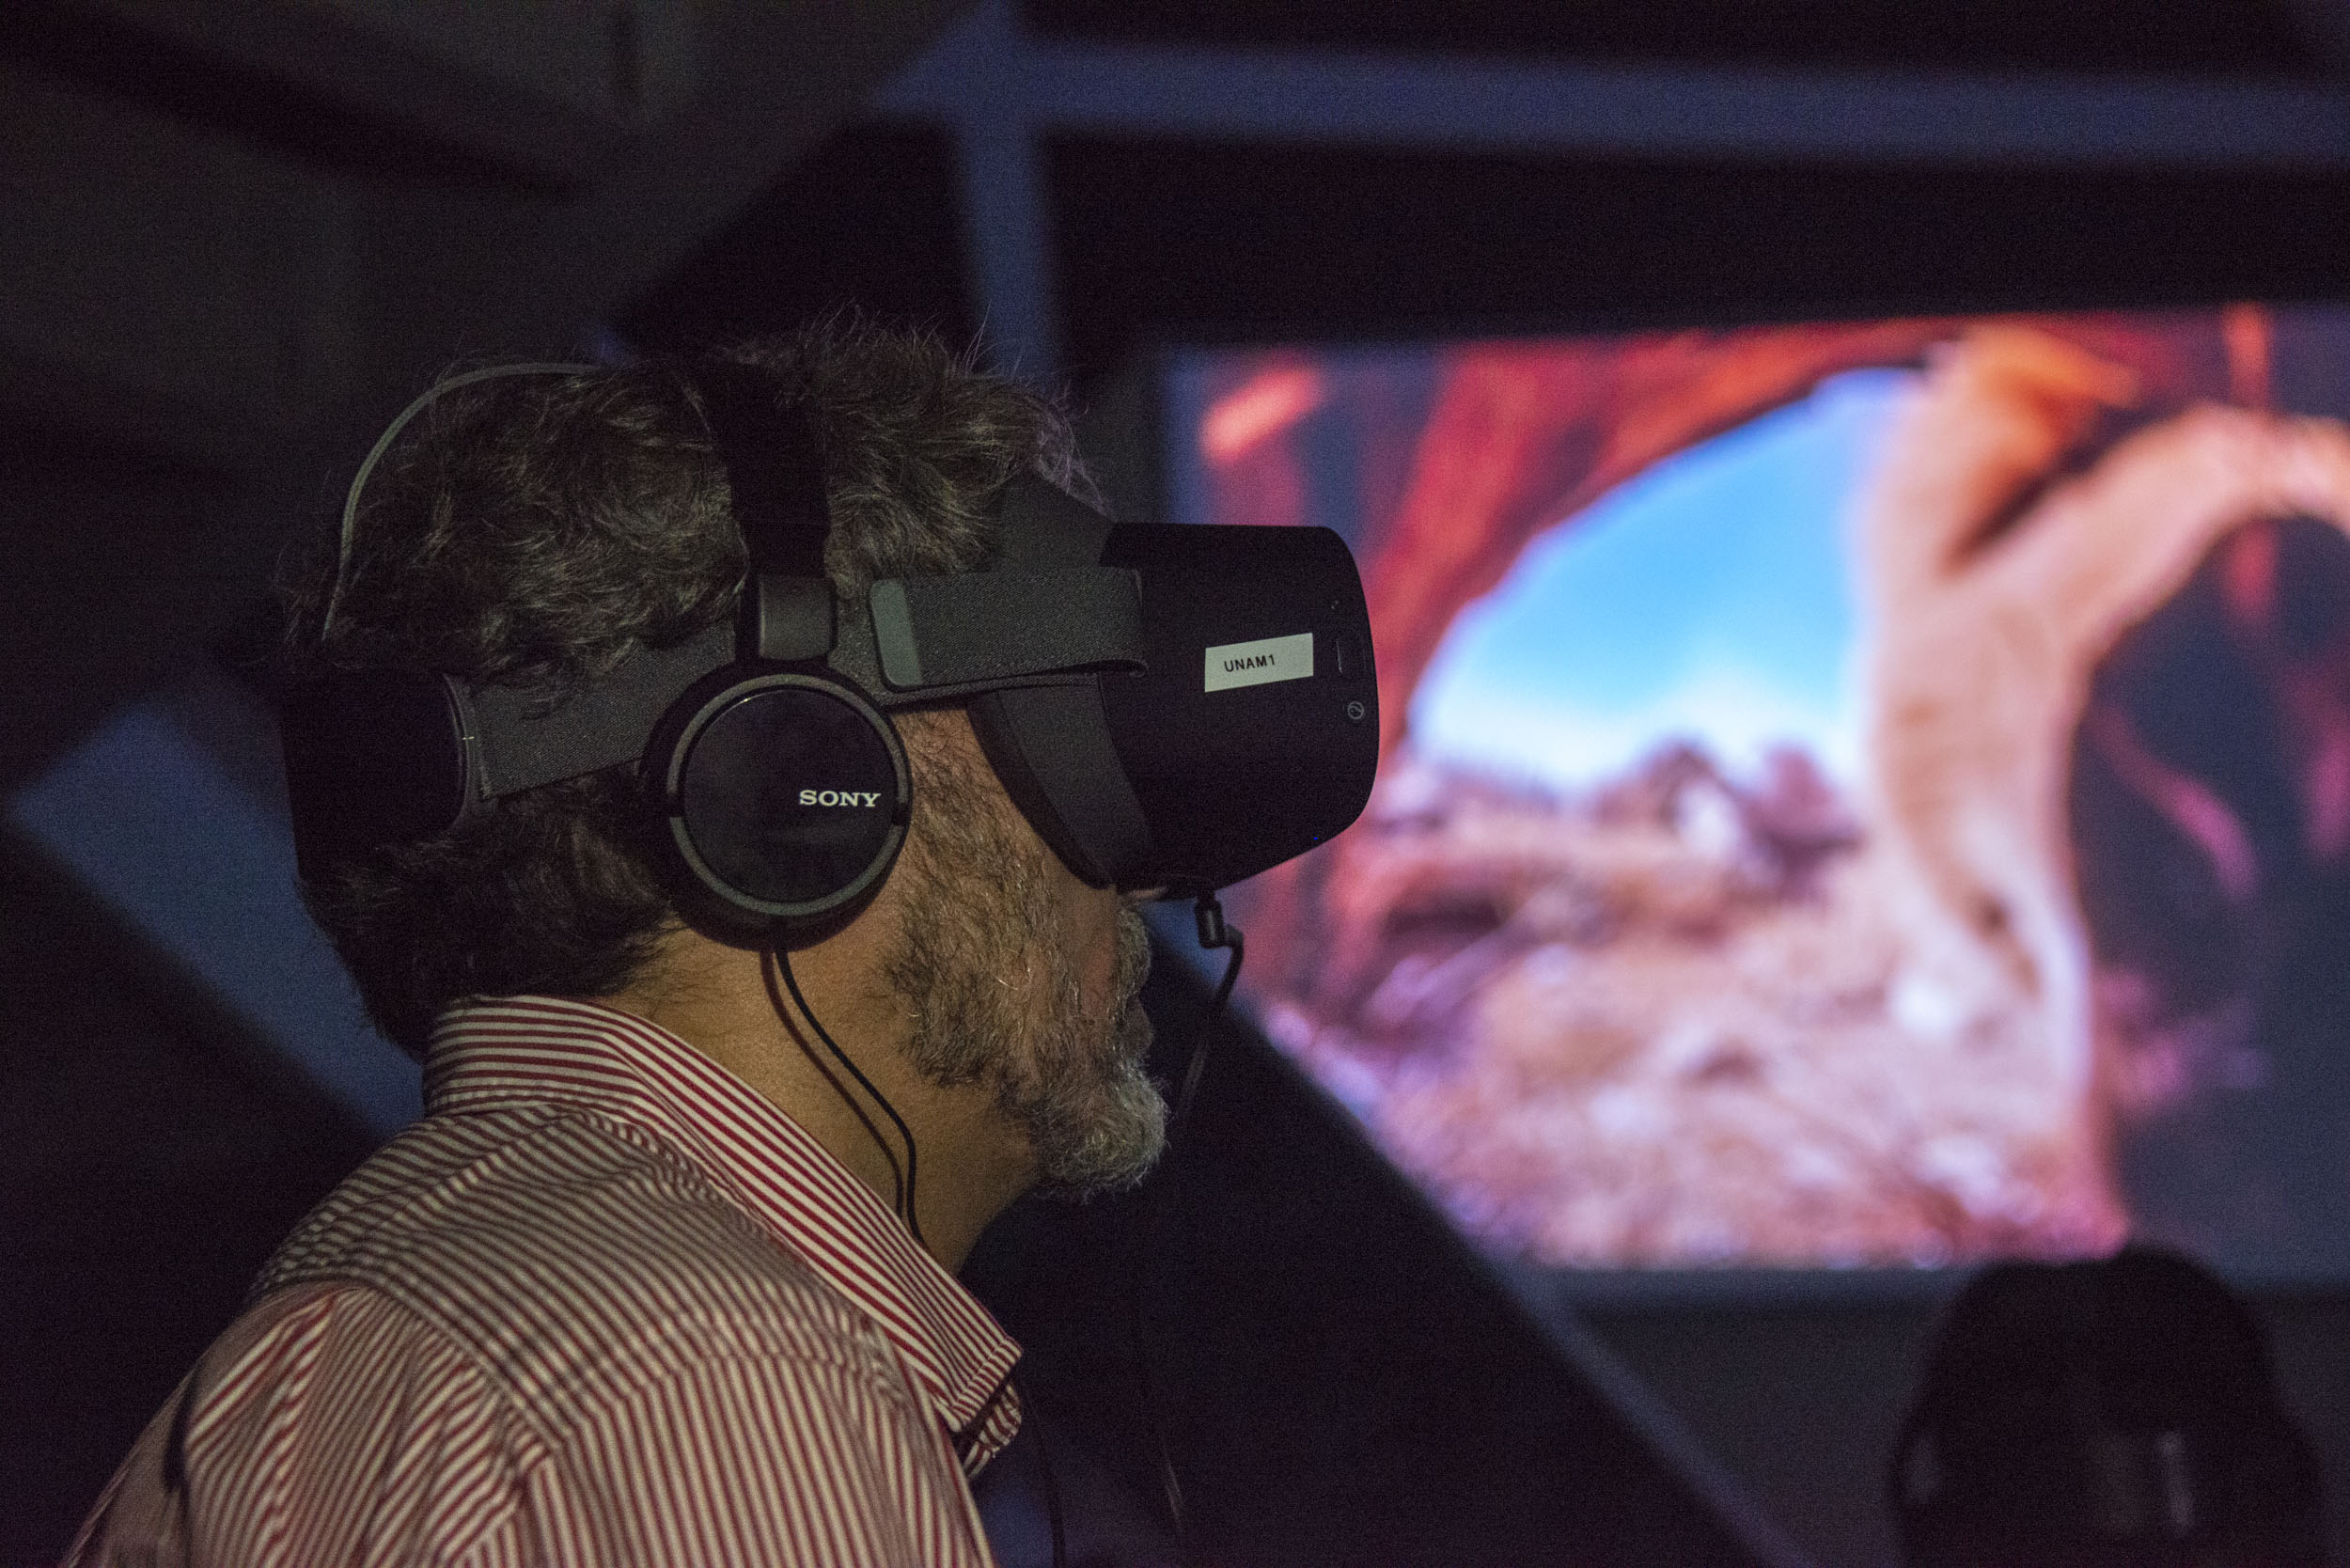 Man wearing VR headset 